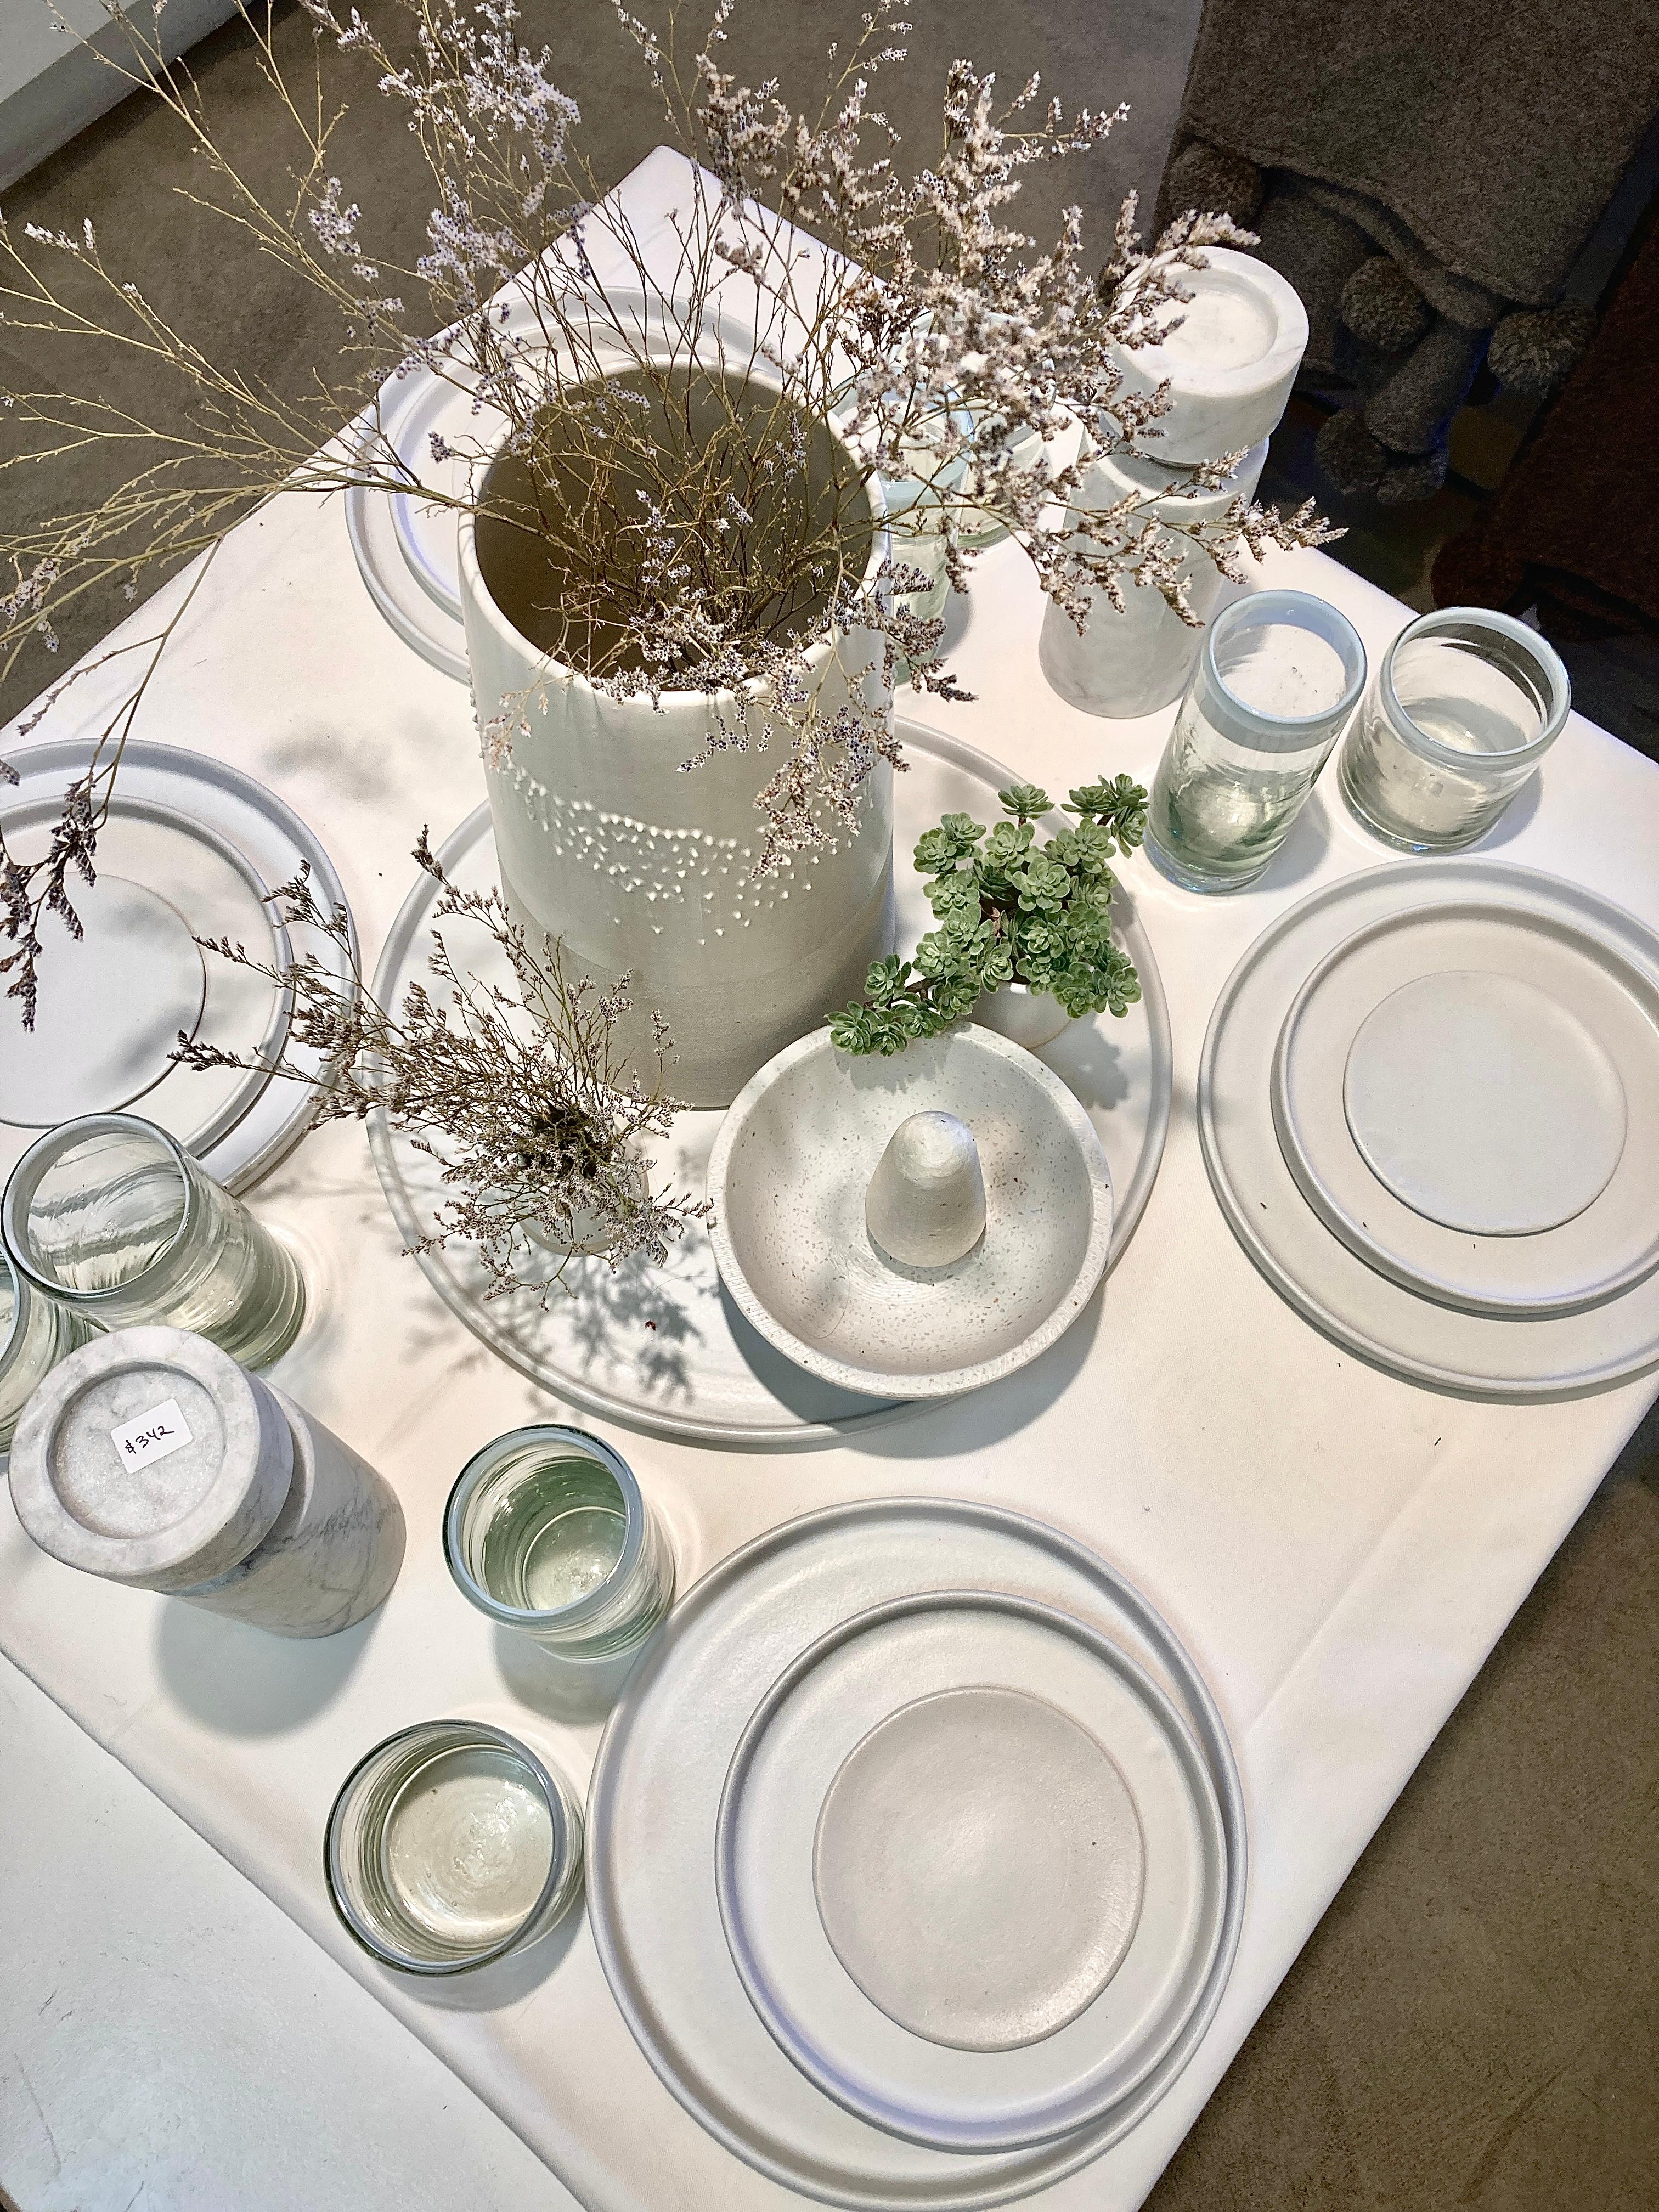 Diese handgefertigten und handbemalten Keramiken aus einem der Mutterländer, Portugal, verleihen Ihrem Tisch einen modernen Touch und sind perfekt zu kombinieren. Diese matt glasierte Platte ist in Schwarz oder Weiß erhältlich.

Größe: 14,5